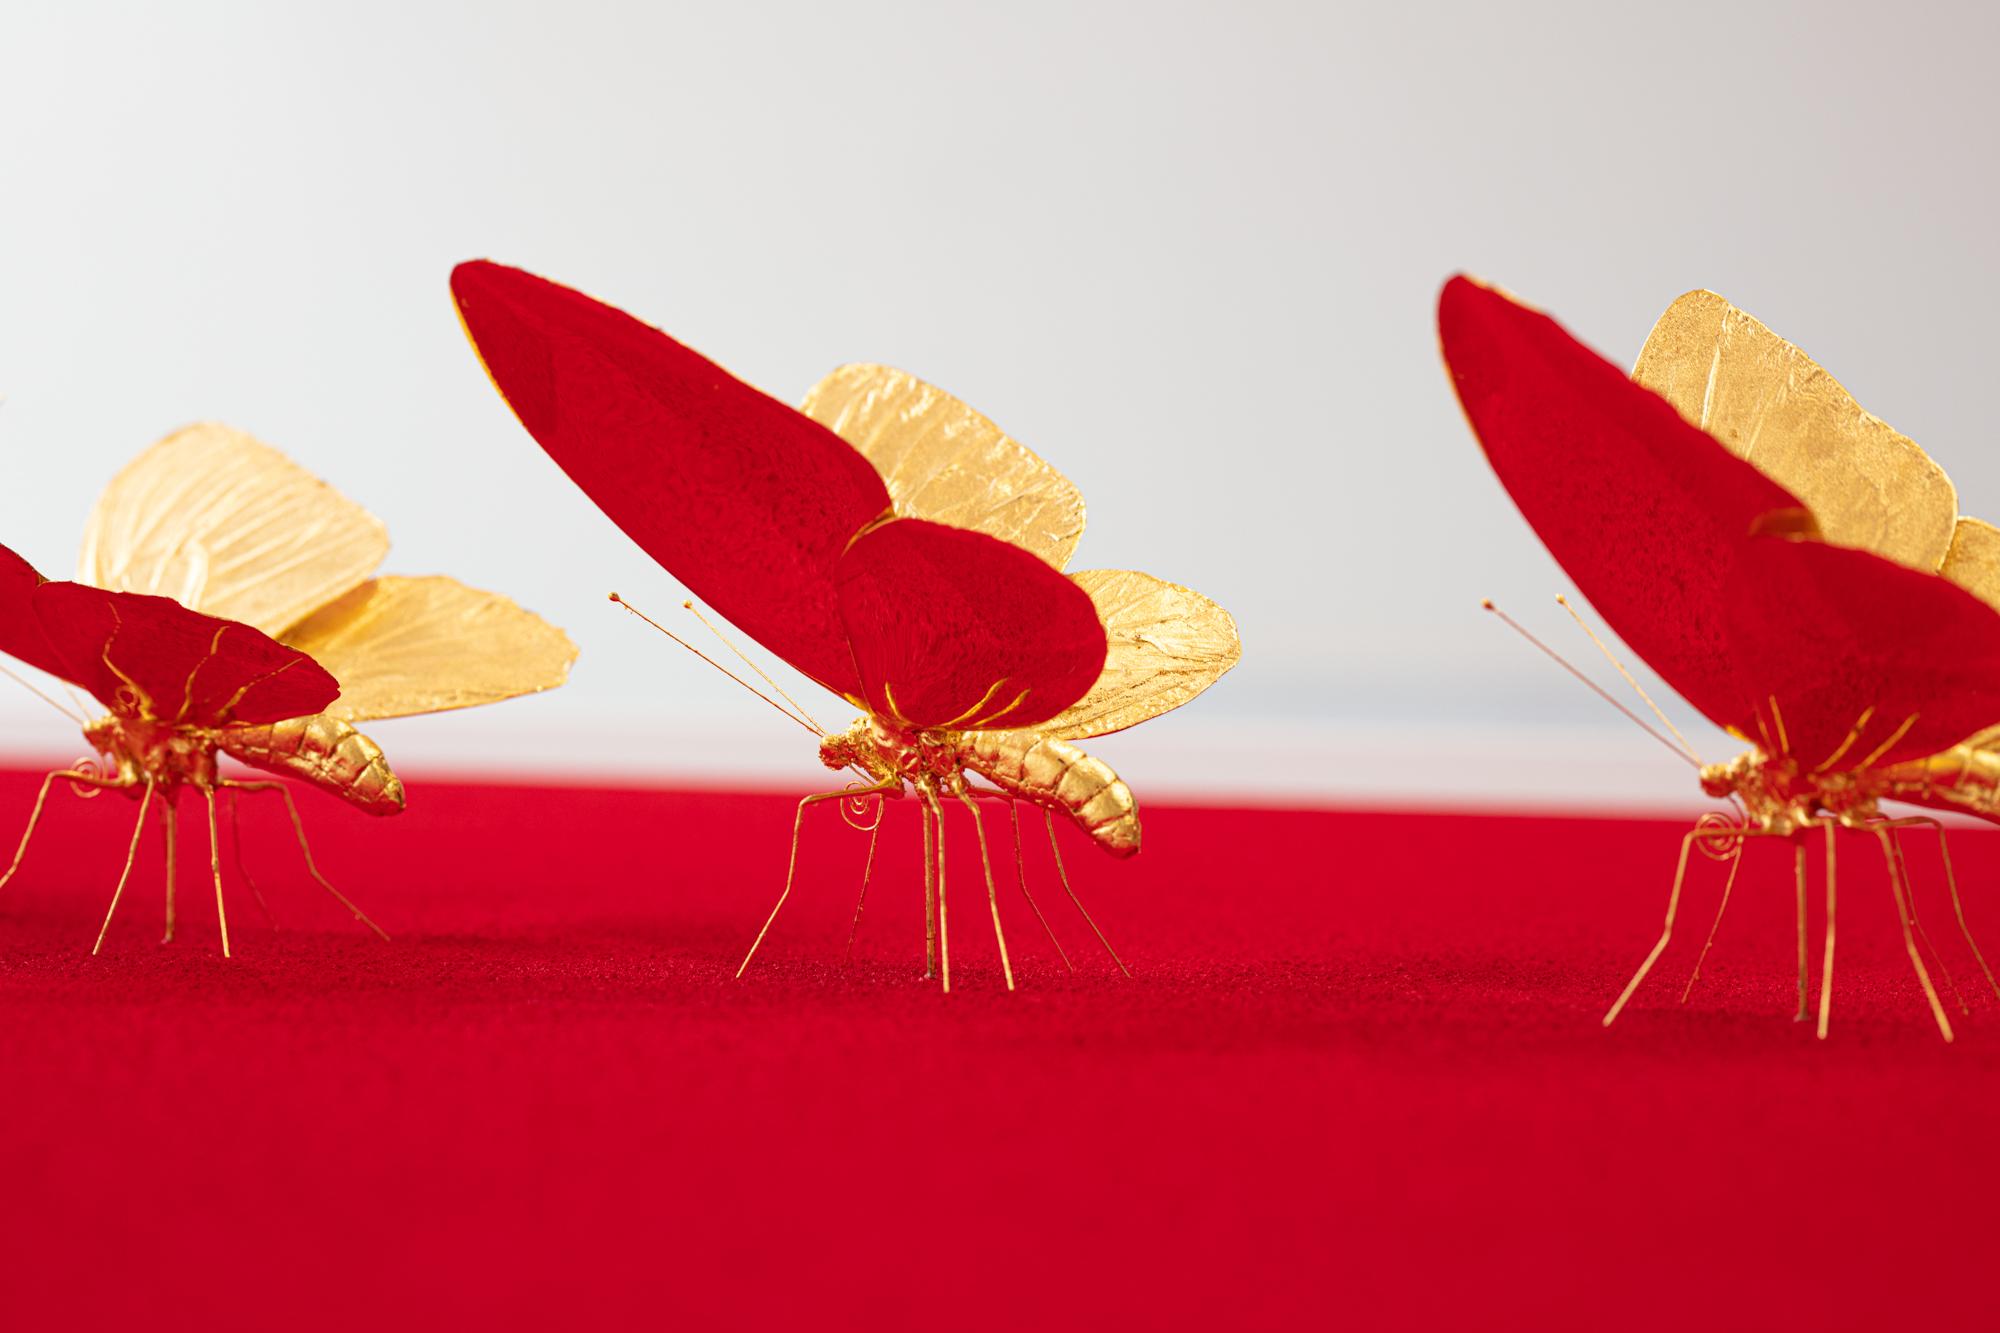 Metamorphosis Red II - 21st Century, Contemporary Figurative, Golden Butterflies 1